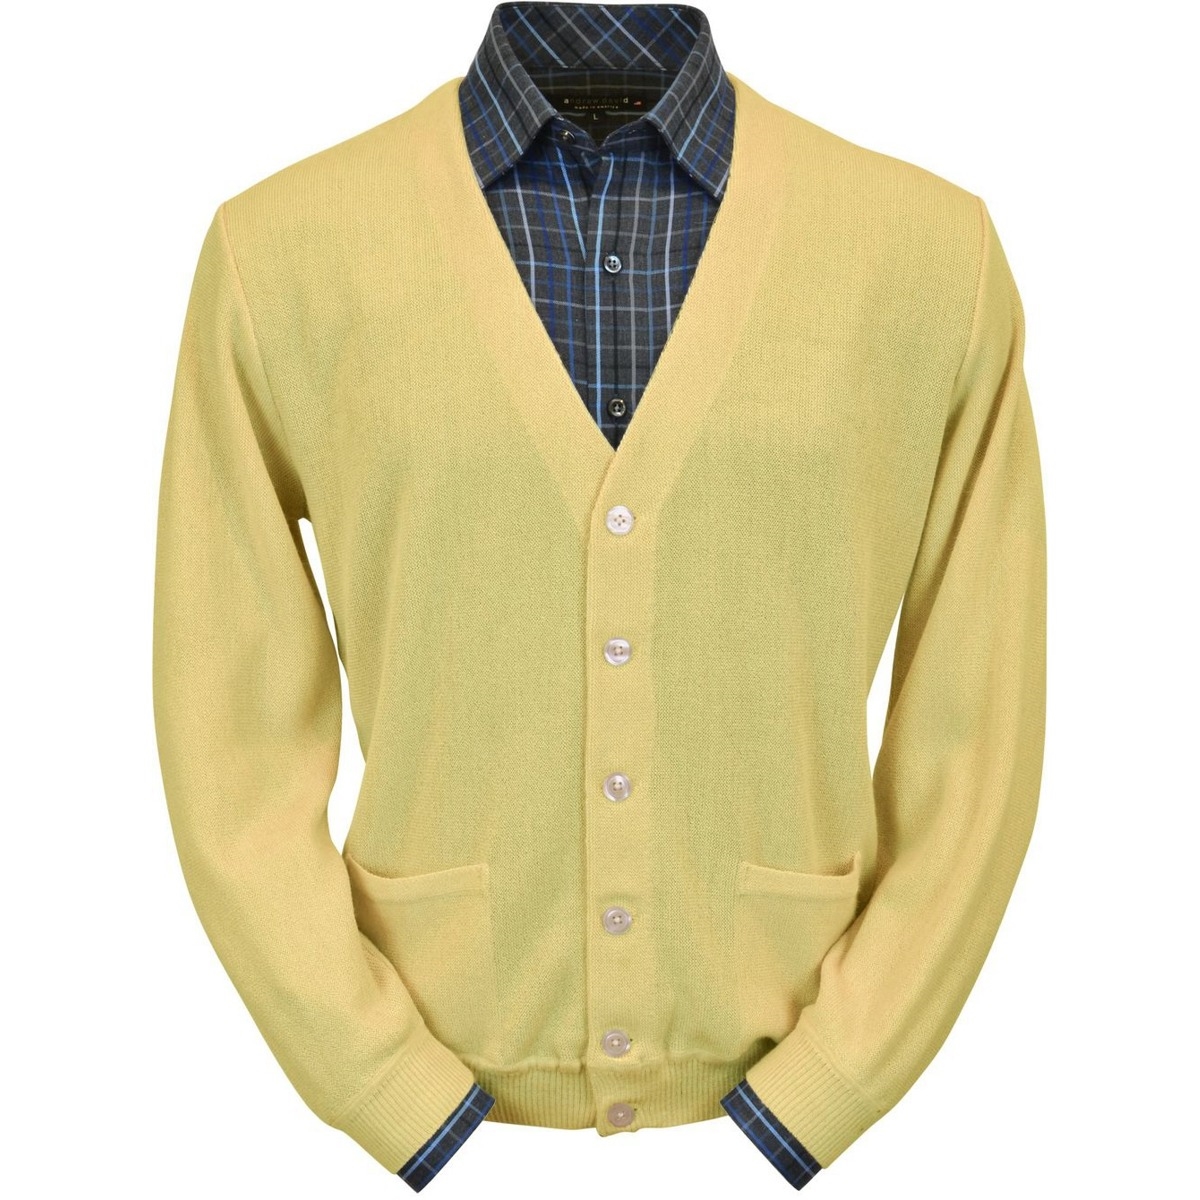 yellow cardigan sweater